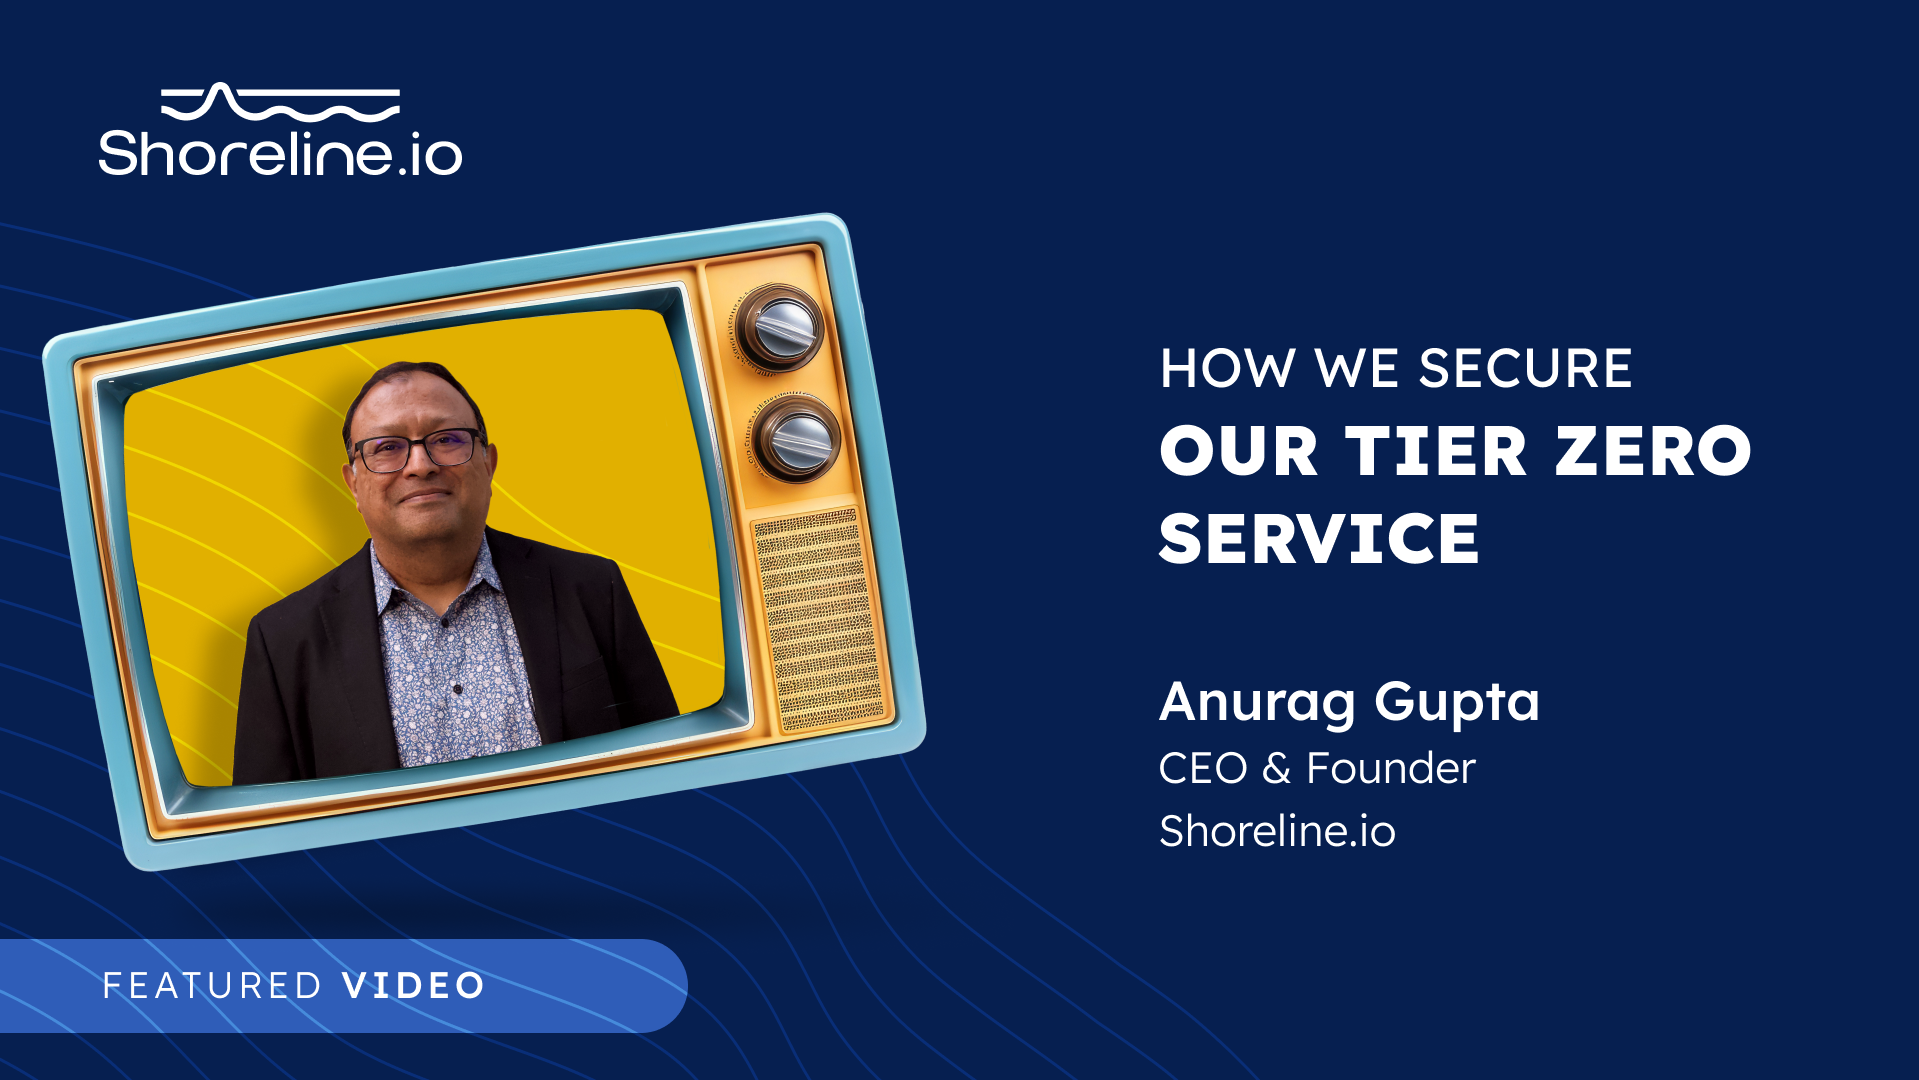 Anurag Gupta, CEO of Shoreline.io on How to Secure a Tier Zero Service